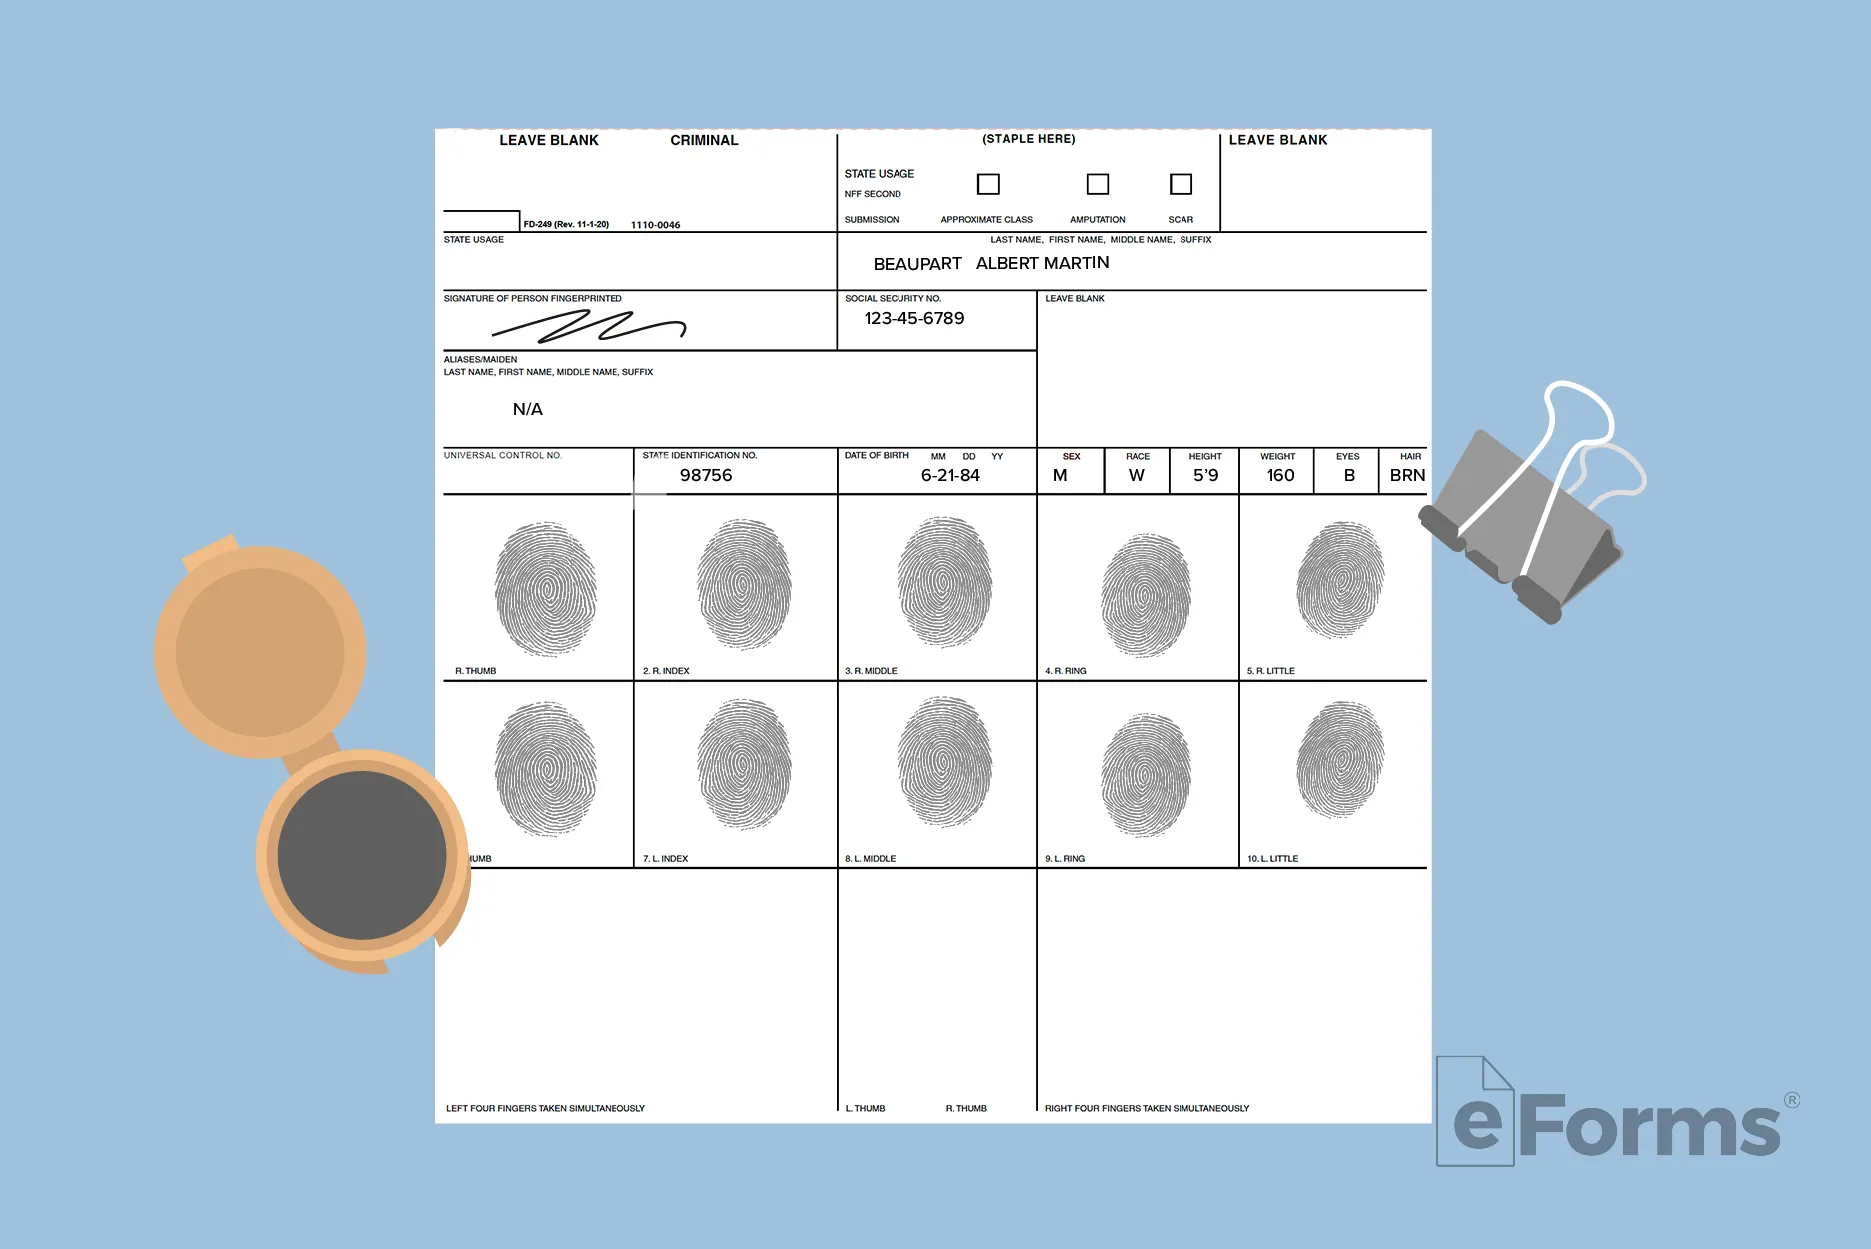 FBI fingerprint form with stamp pad and binder clip.